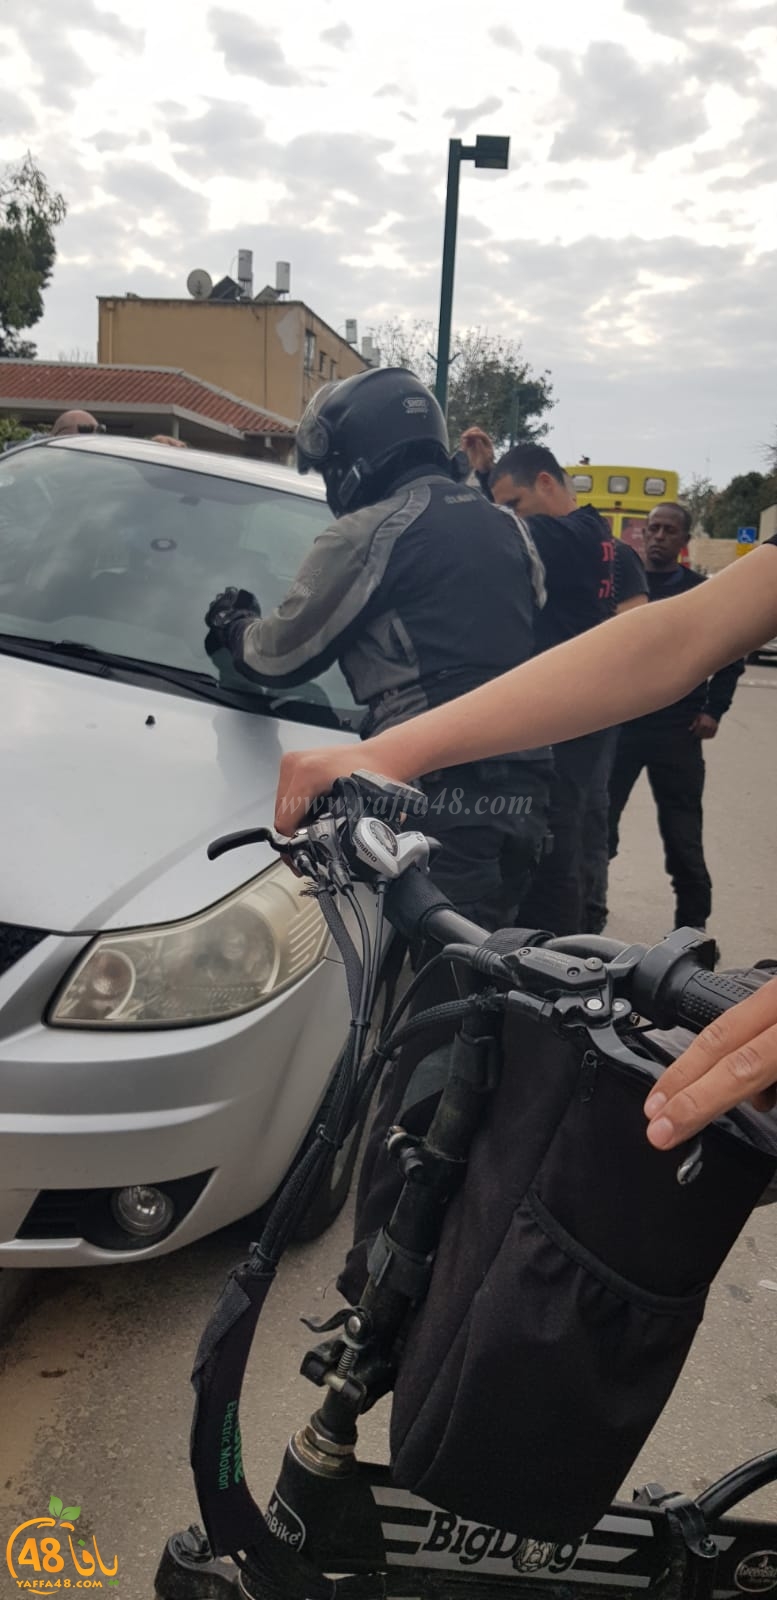  يافا: إنقاذ طفل تُرك داخل مركبة في المدينة 